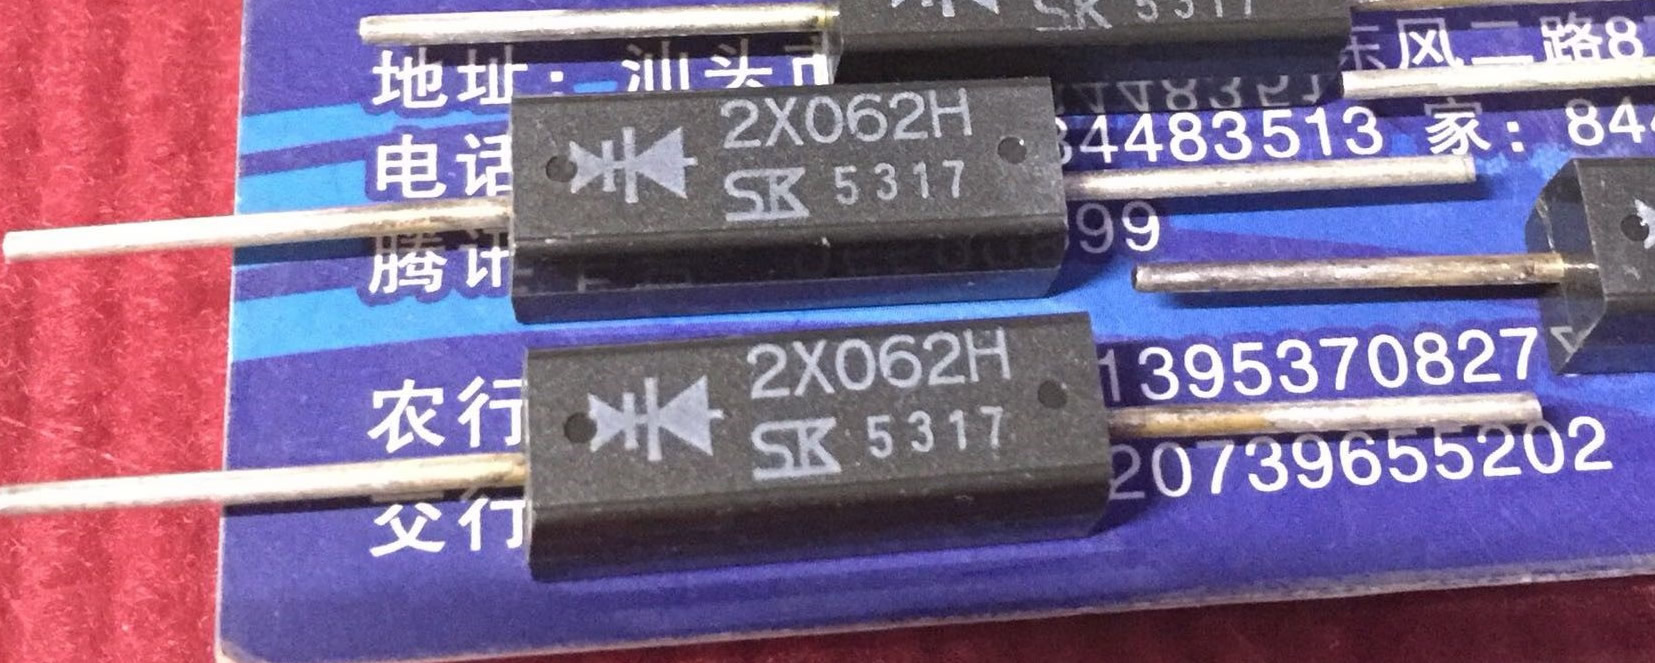 2X062H New Original SK 5PCS/LOT